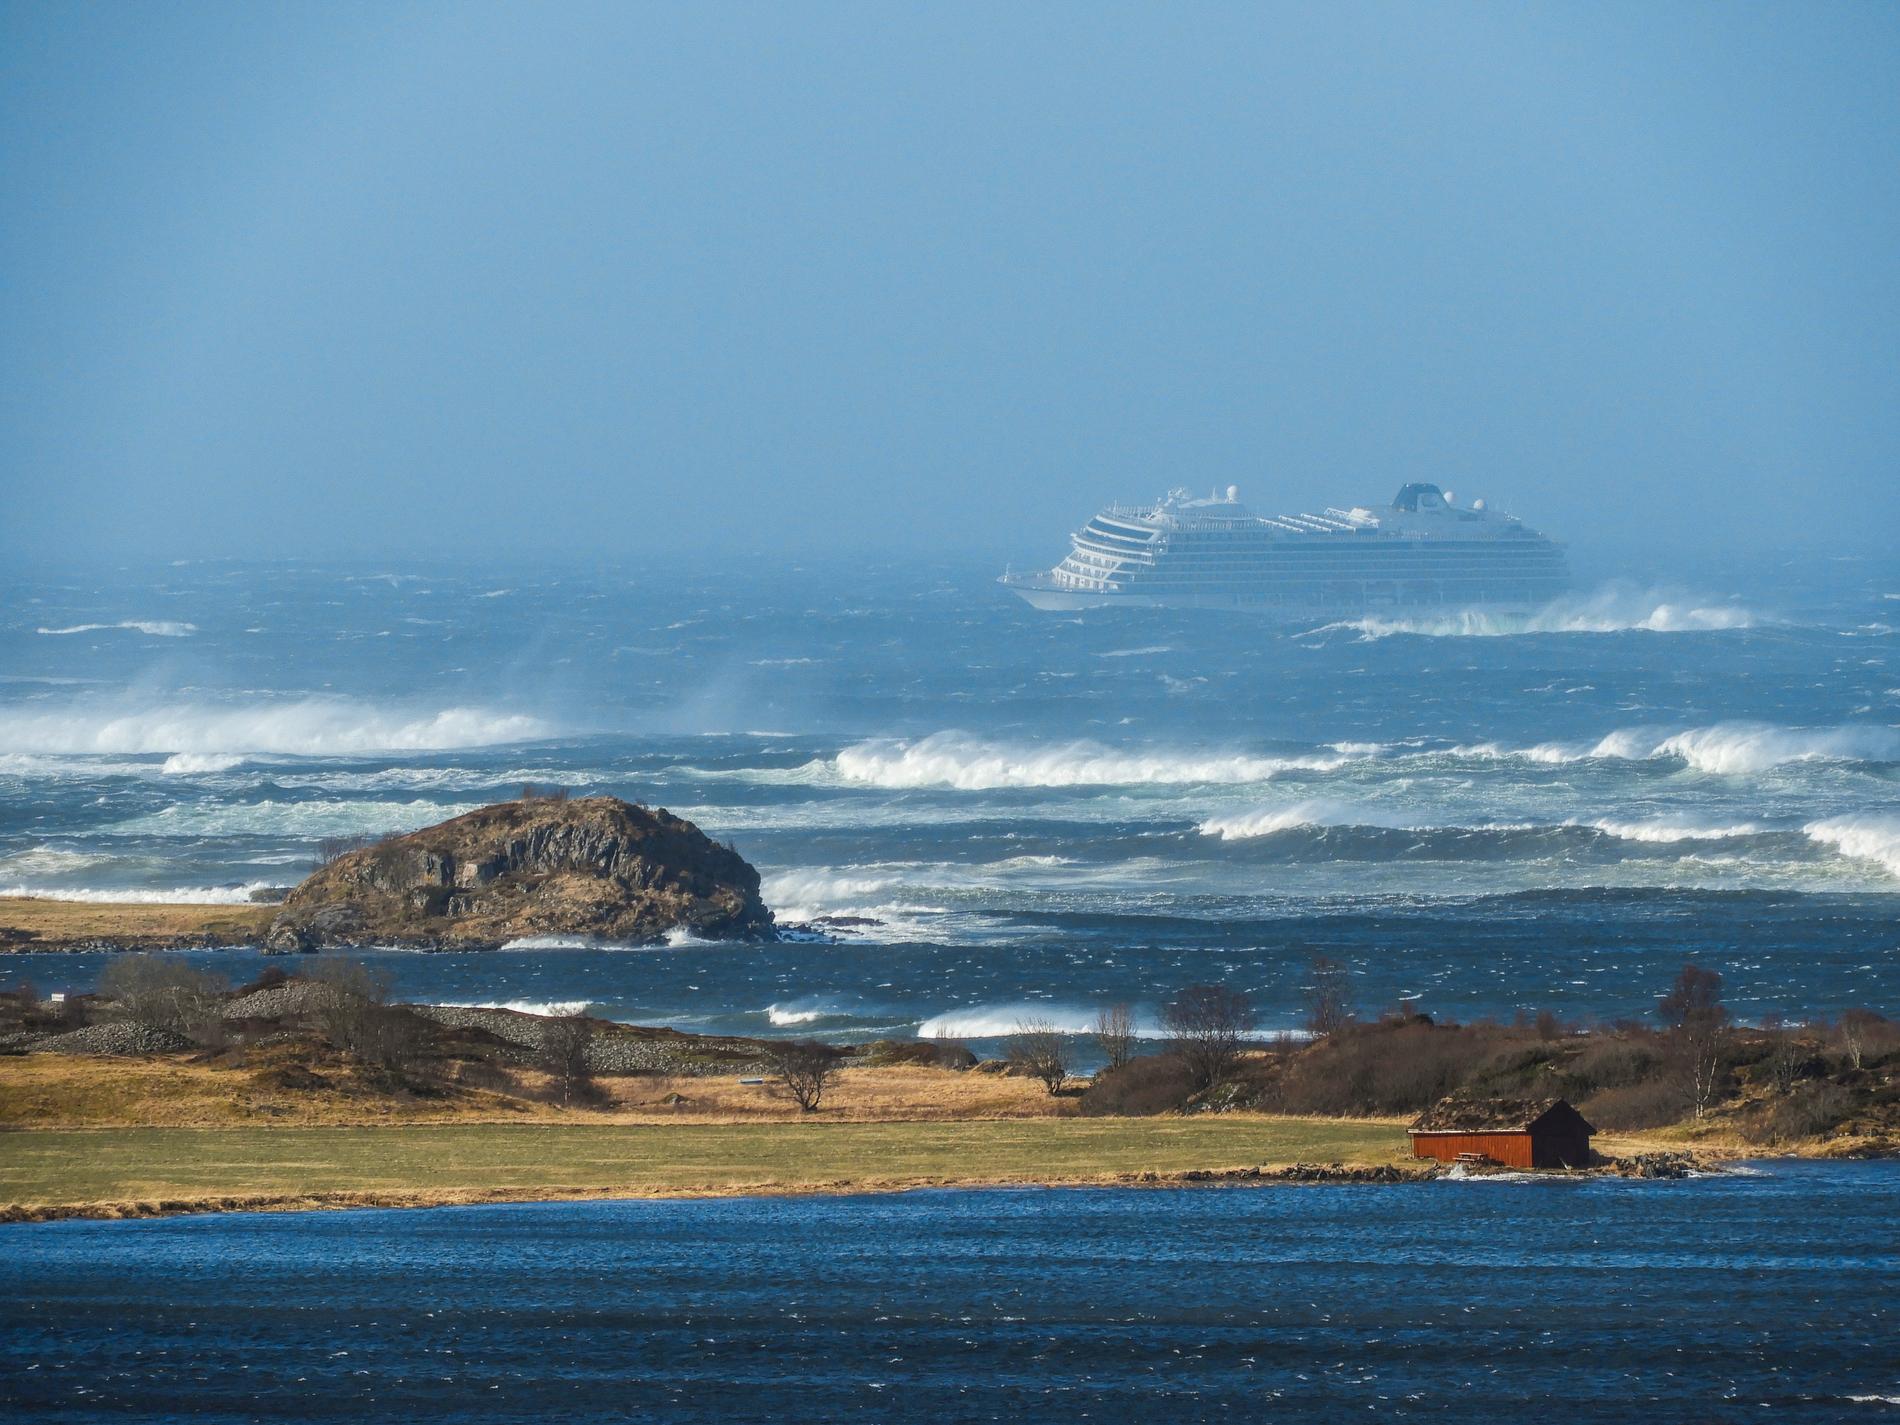 Passagerare på fartyget Viking Sky saksöker kryssningsbolaget efter att fartyget fastnade i svårt oväder utanför kusten. Arkivbild.